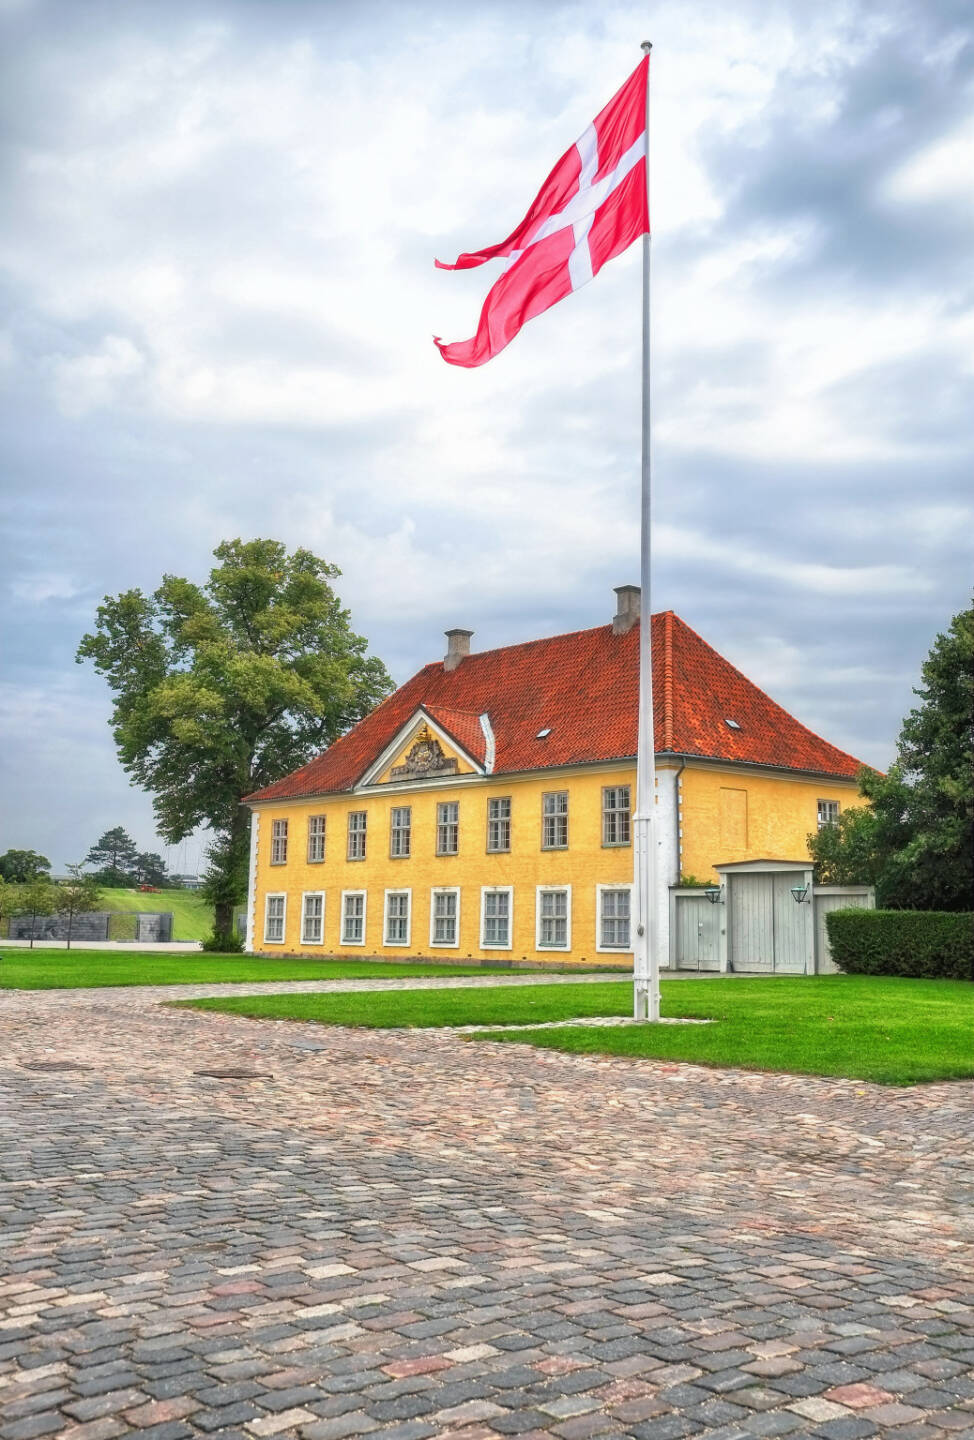 The Commander's House, Dänische Flagge (Dannebrog) in Kastellet, Kopenhagen, Dänemark, http://www.shutterstock.com/pic-244528756/stock-photo-the-commander-s-house-with-danish-flag-dannebrog-in-kastellet-copenhagen-denmark.html